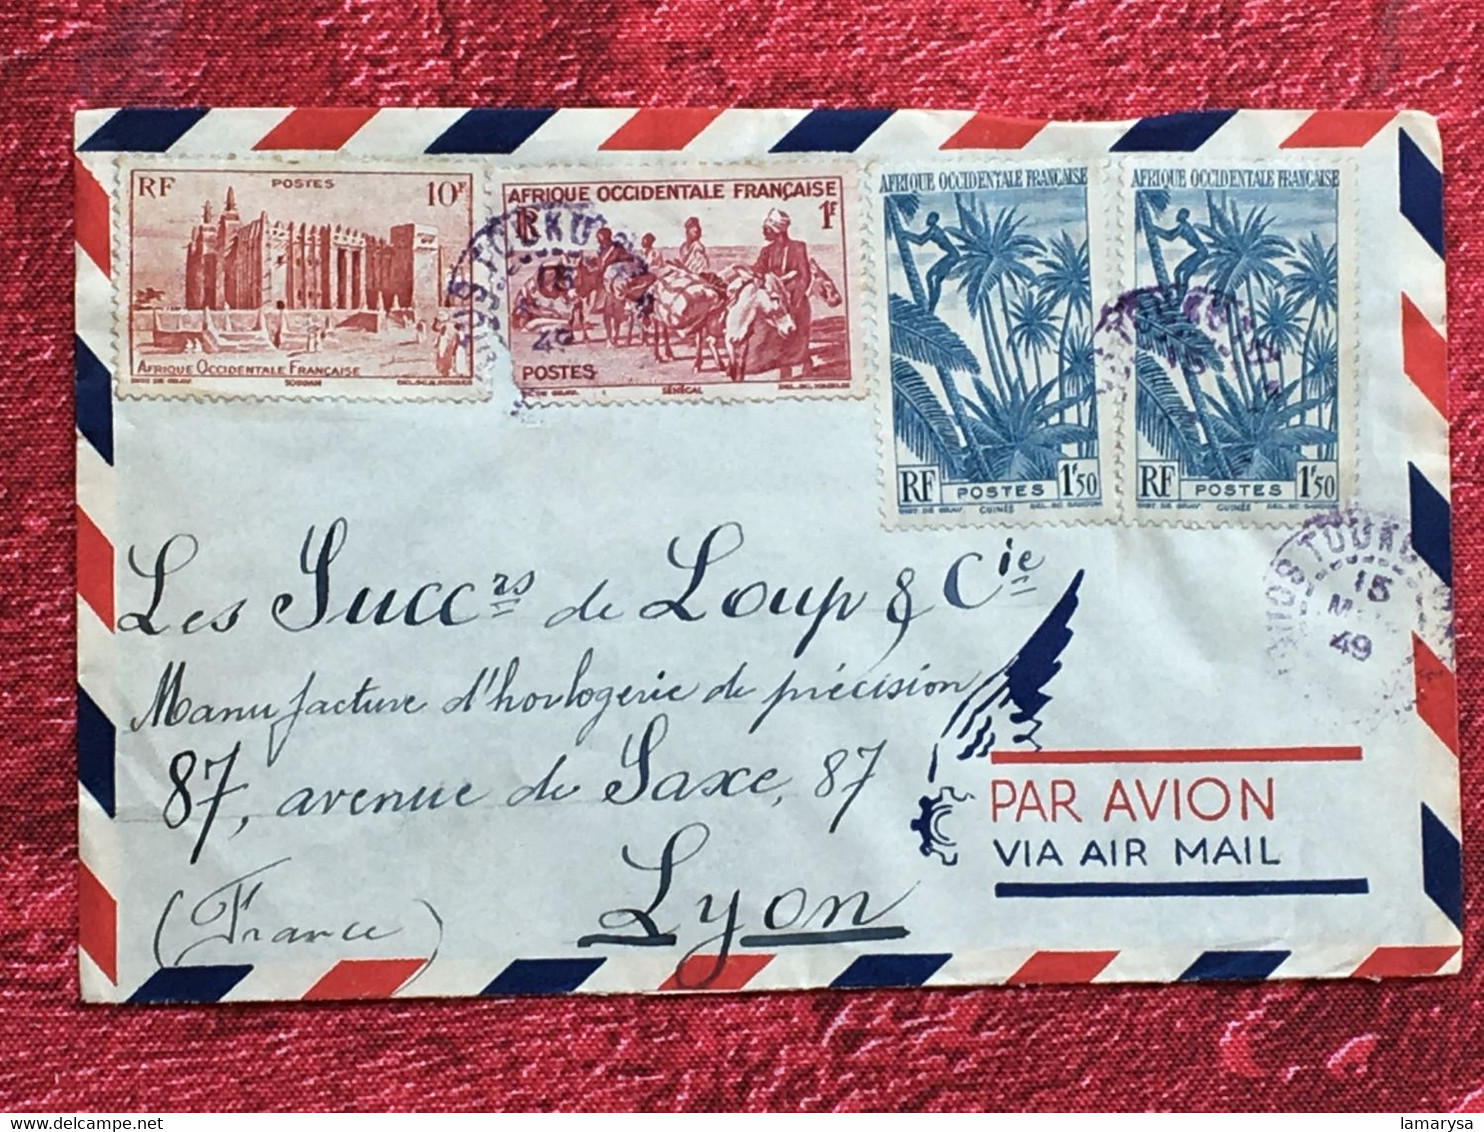 A.O.F-Soudan Français-☛(ex-Colonie Protectorat)Timbres Aff. Composé Lettre Document-☛-avion-Tarif Poste Aérienne-1949 - Covers & Documents